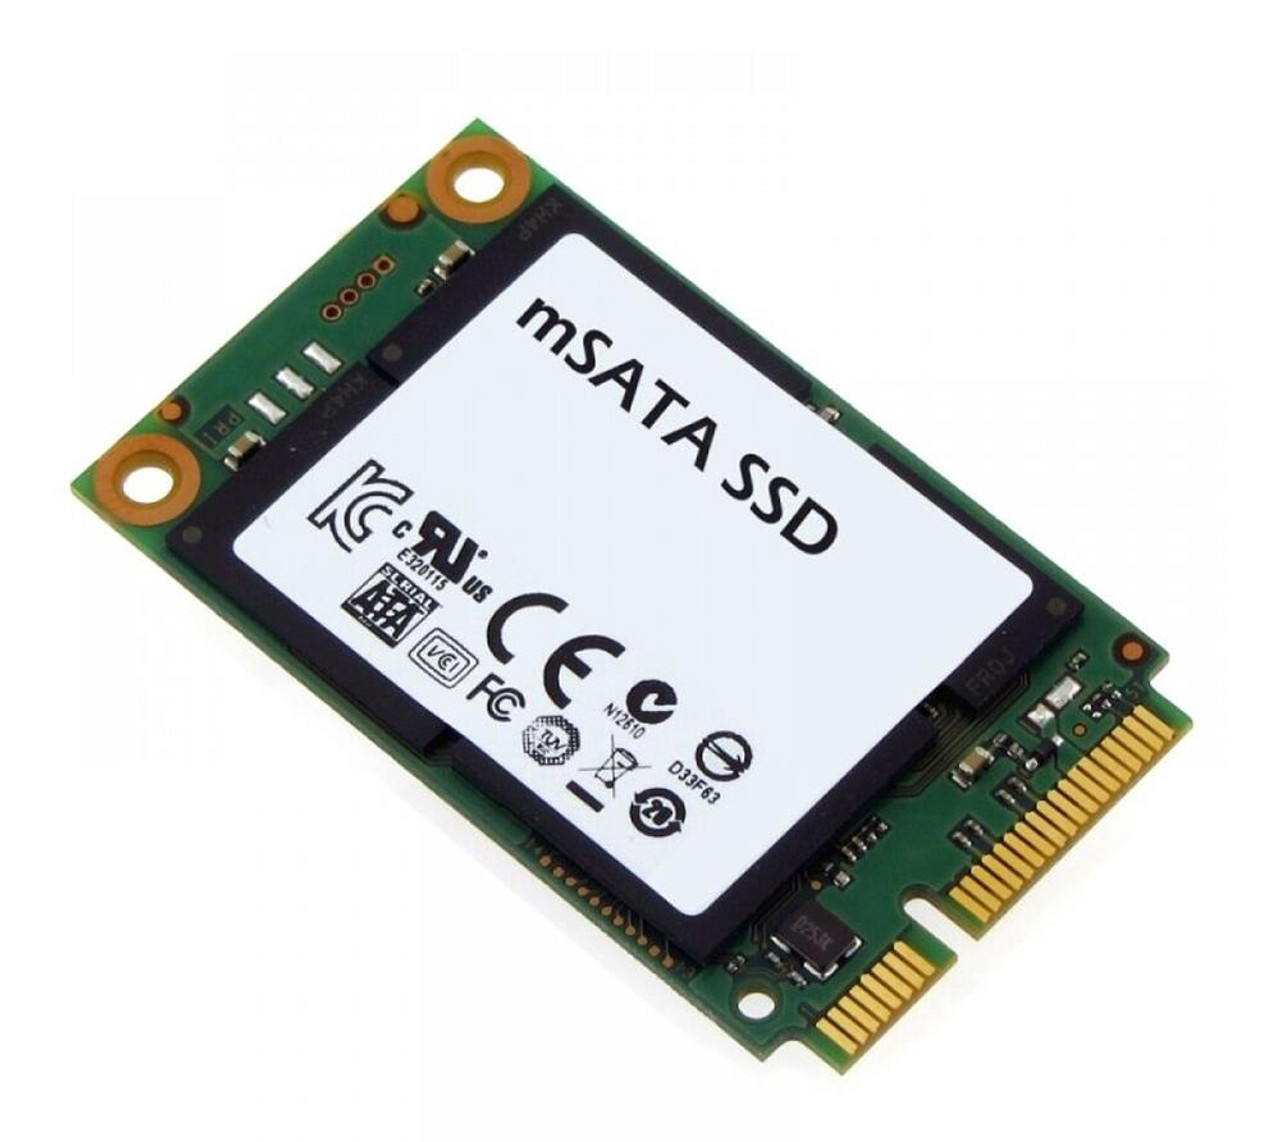 03B0300081500 ASUS 24GB mSATA Internal Solid State Drive (SSD)